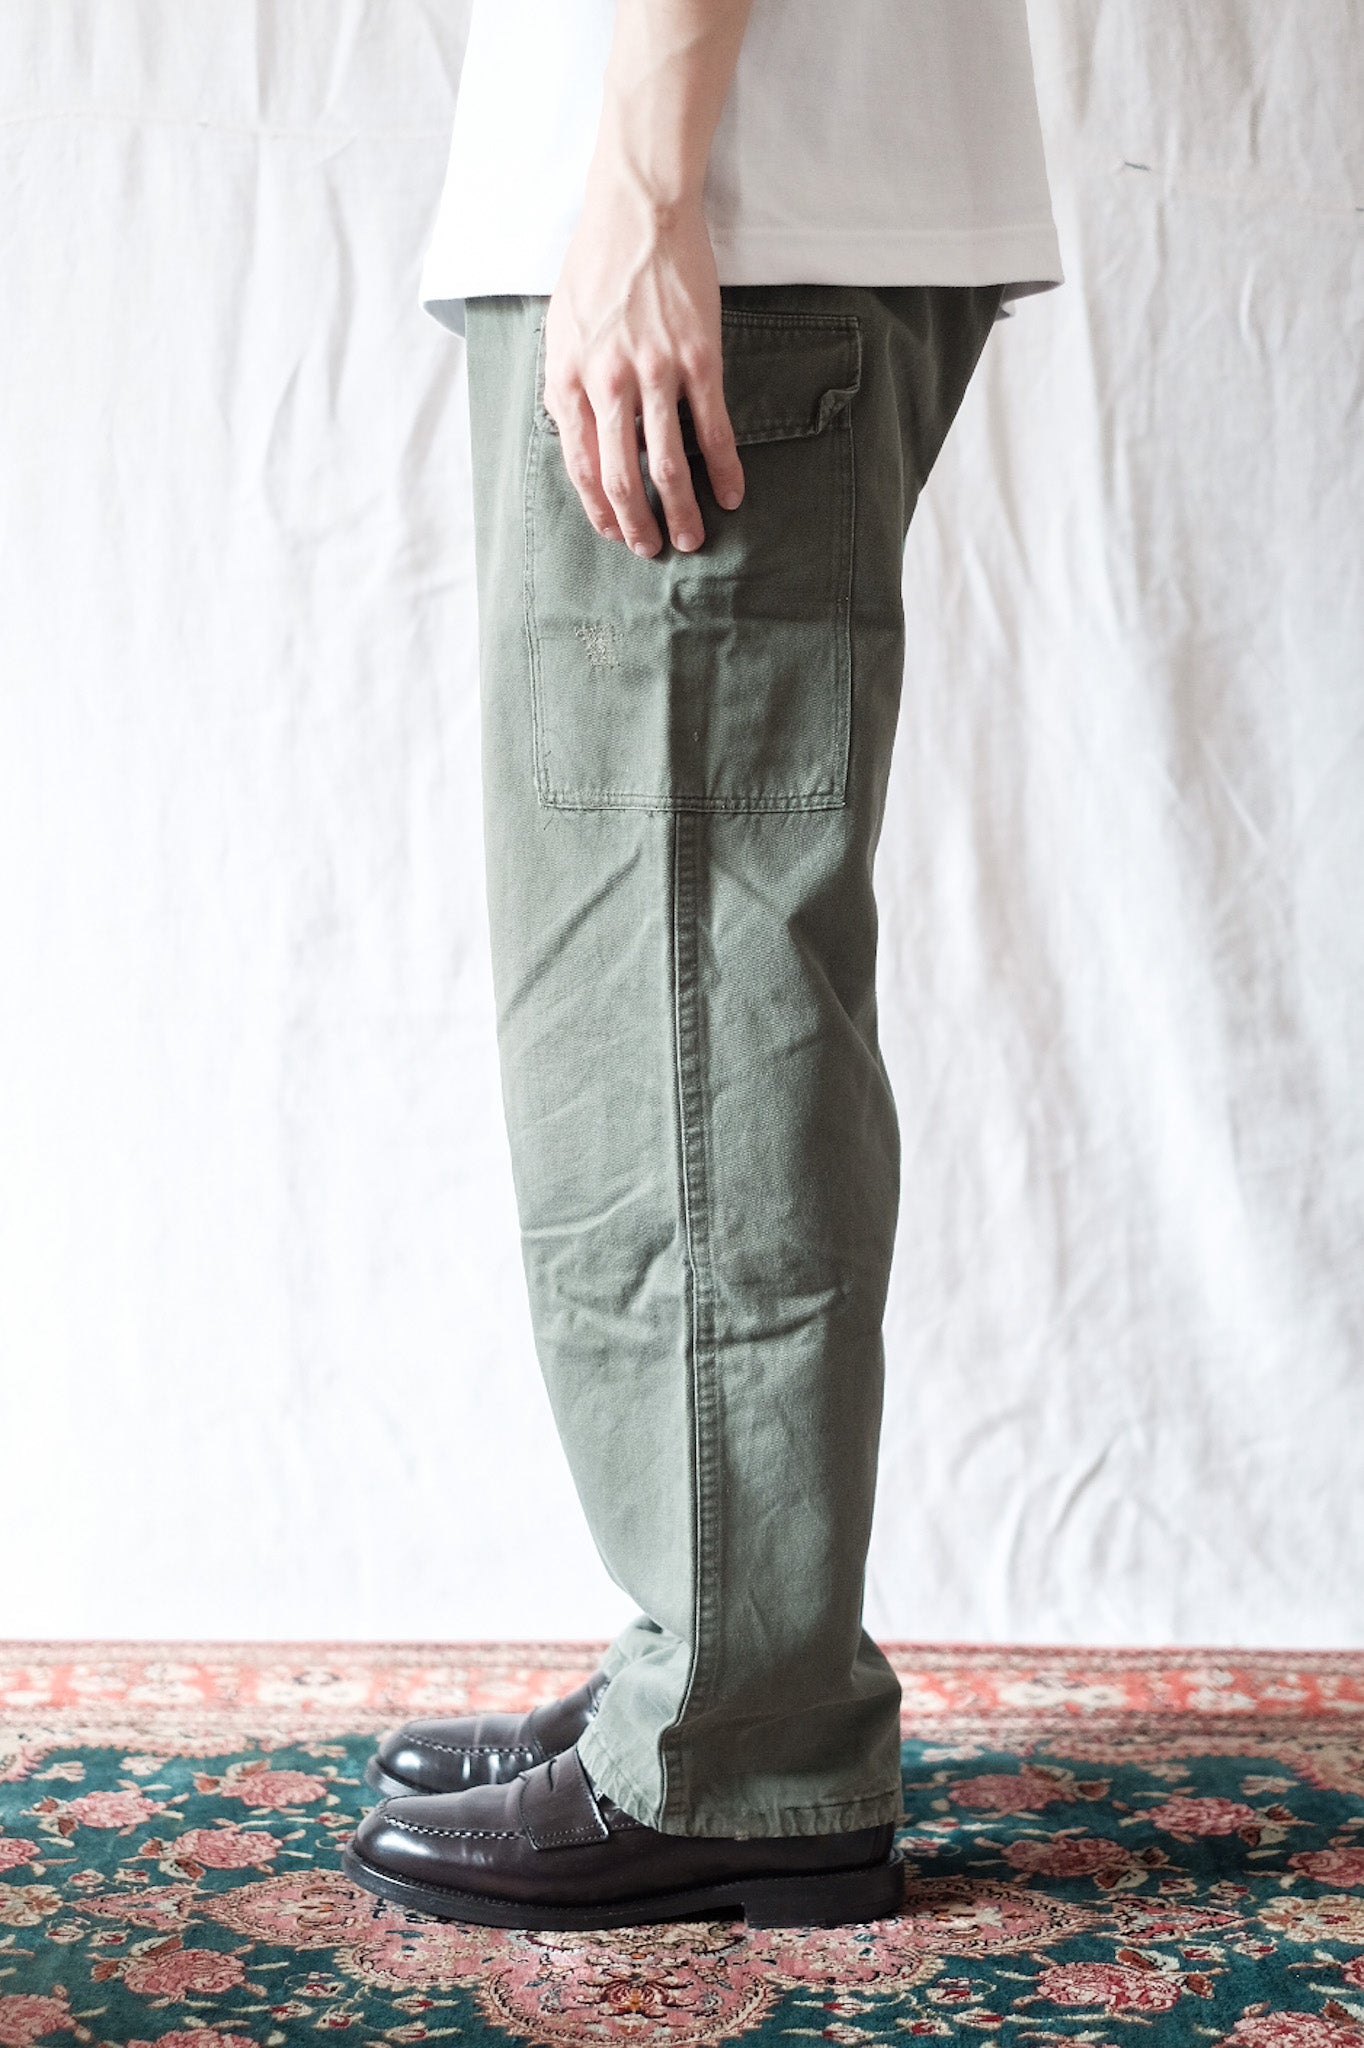 [~ 80's] pantalon de terrain de l'armée belge